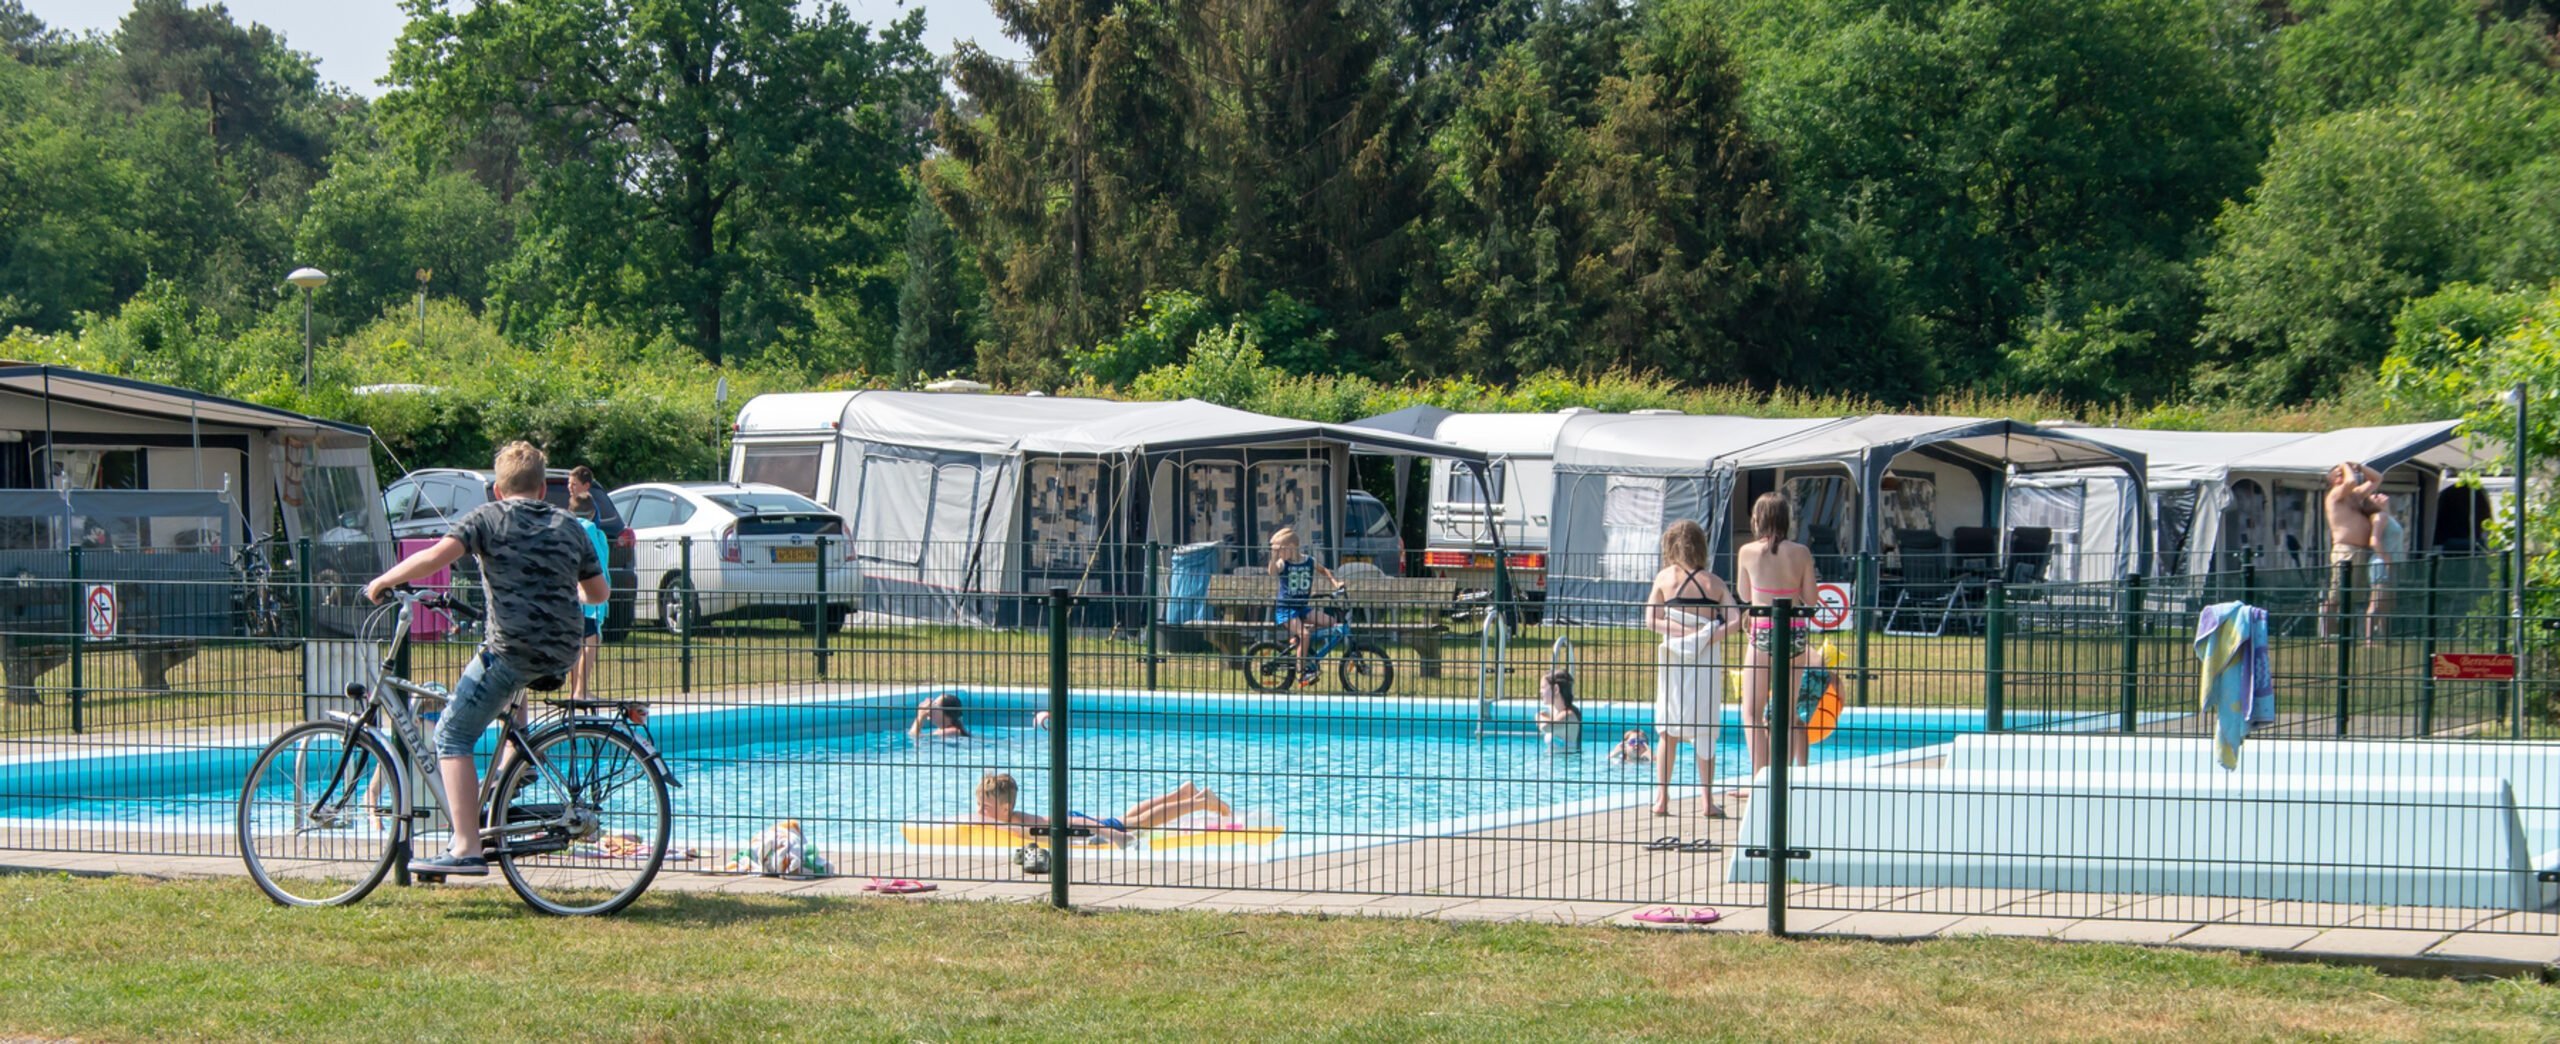 Vakantie in Gelderland camping met zwembad